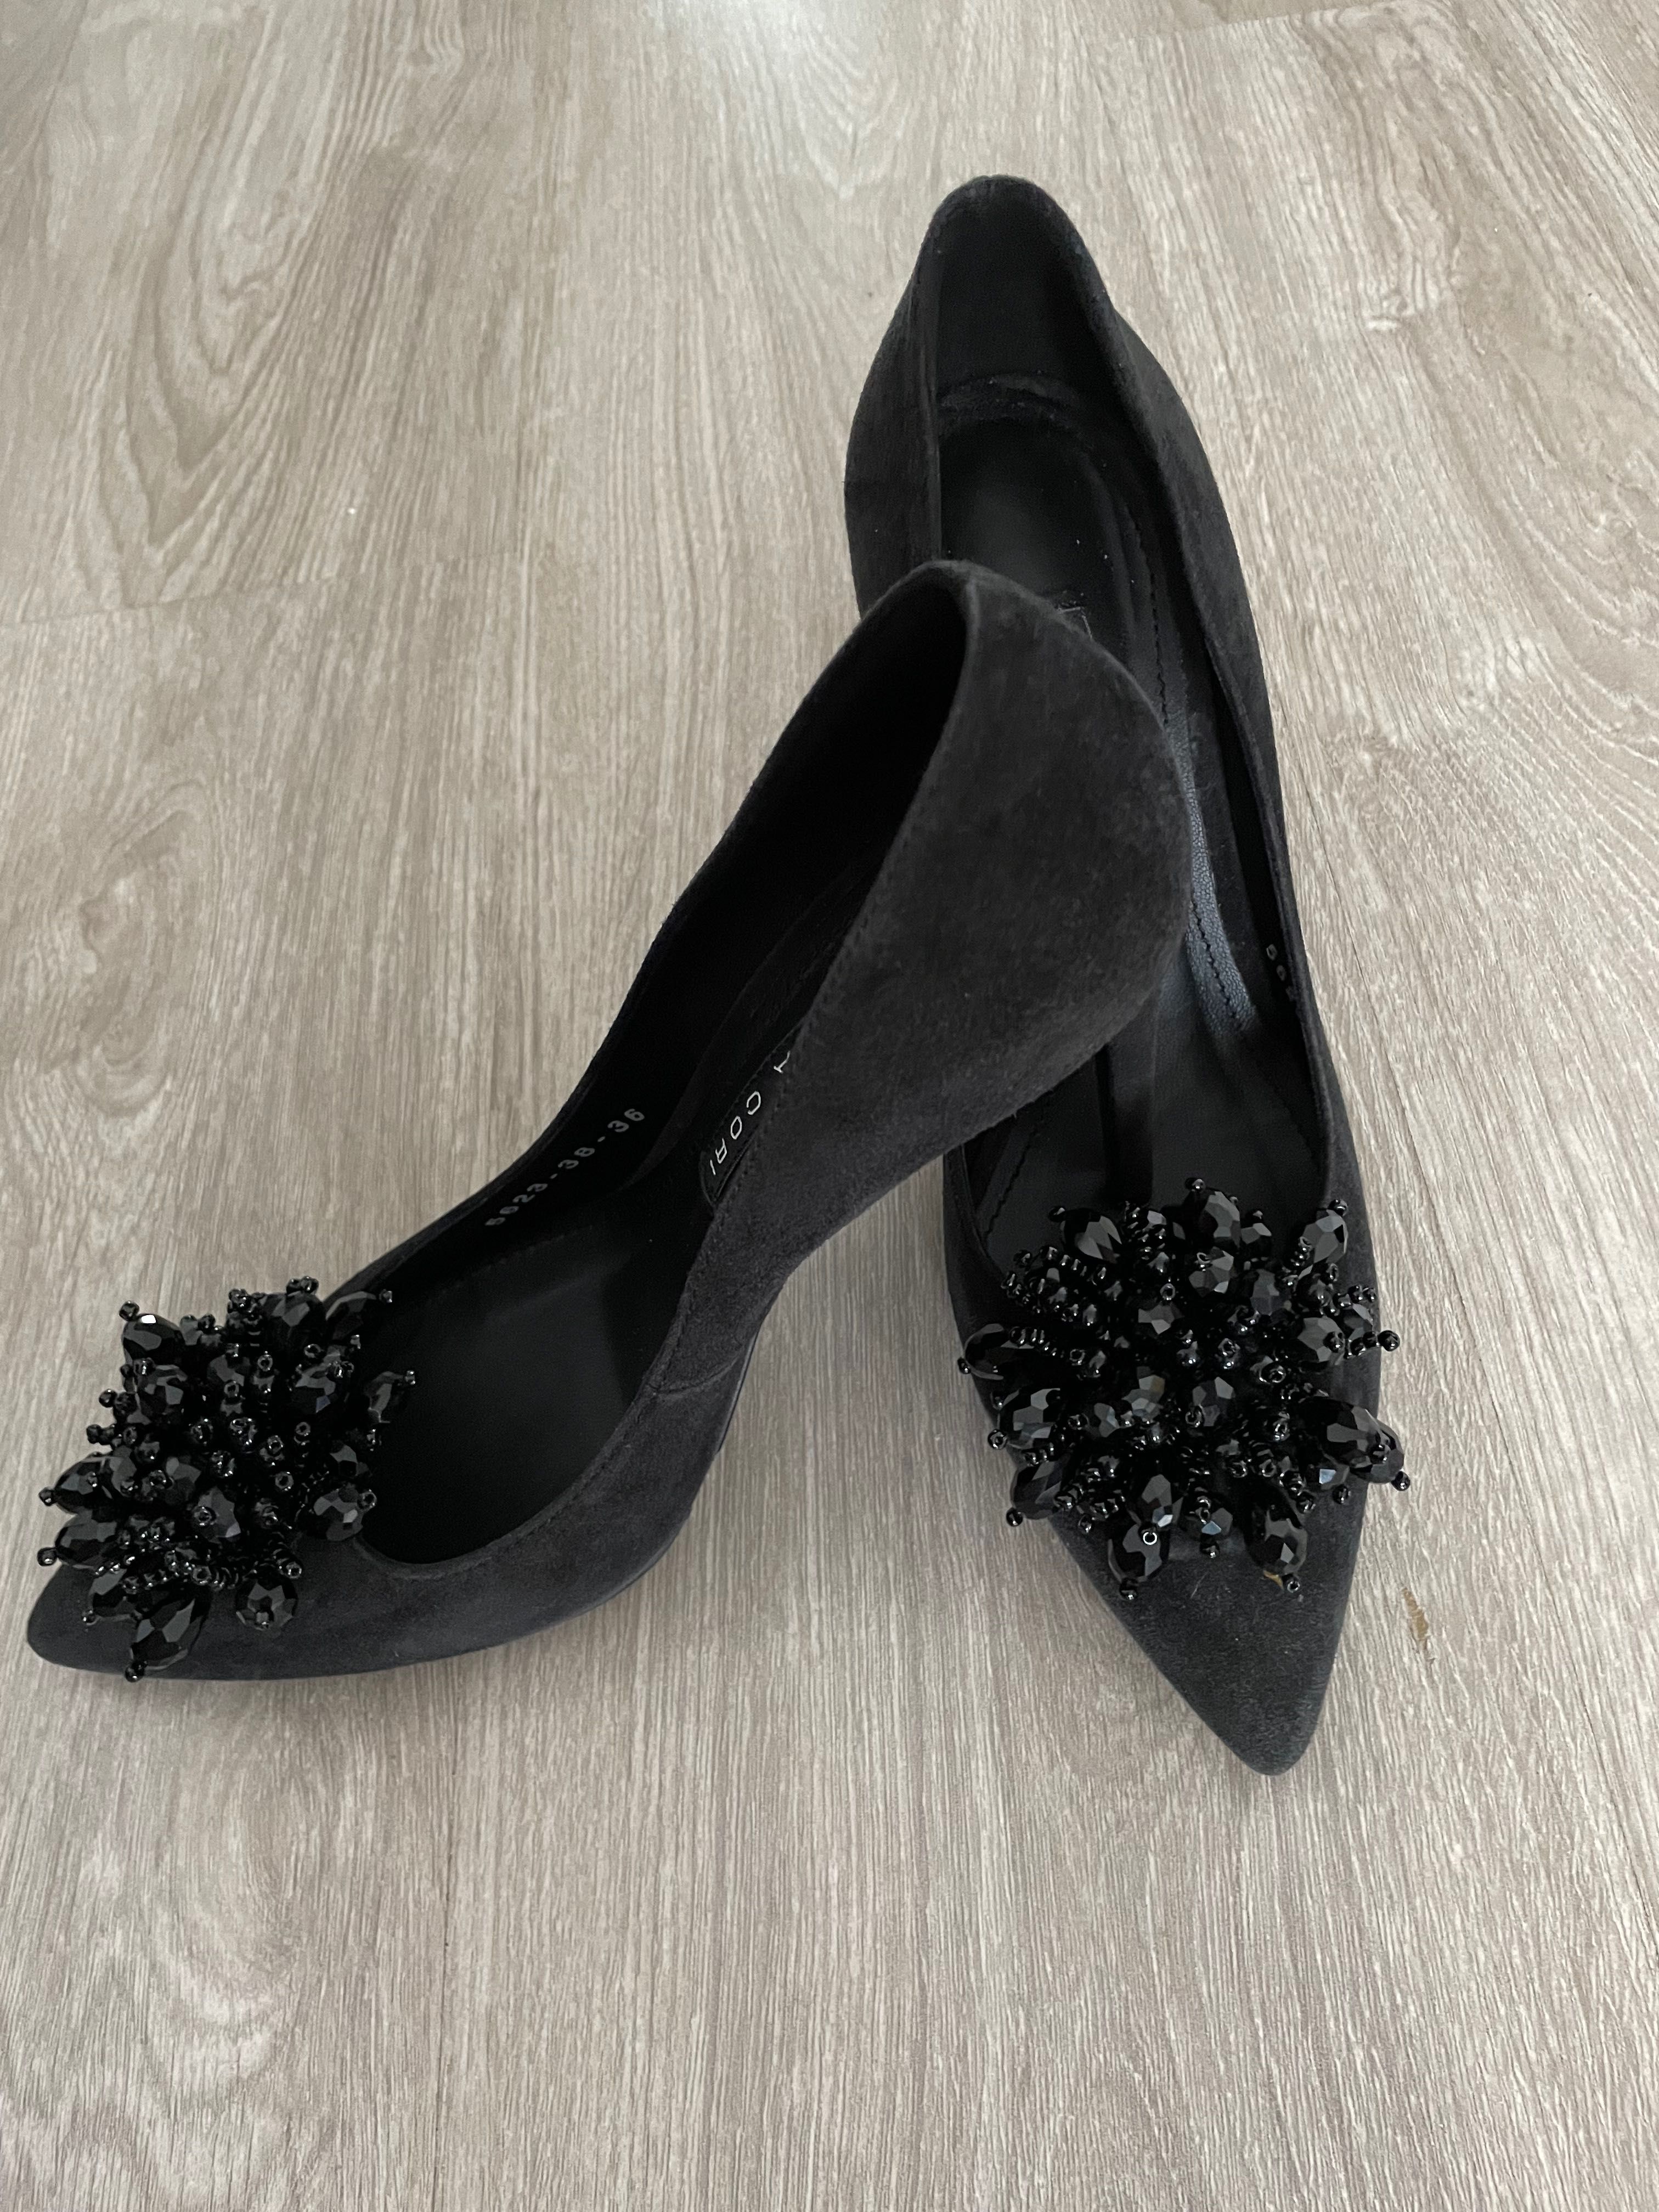 Pantofi ANNA CORI negri, piele întoarsă, mărimea 38